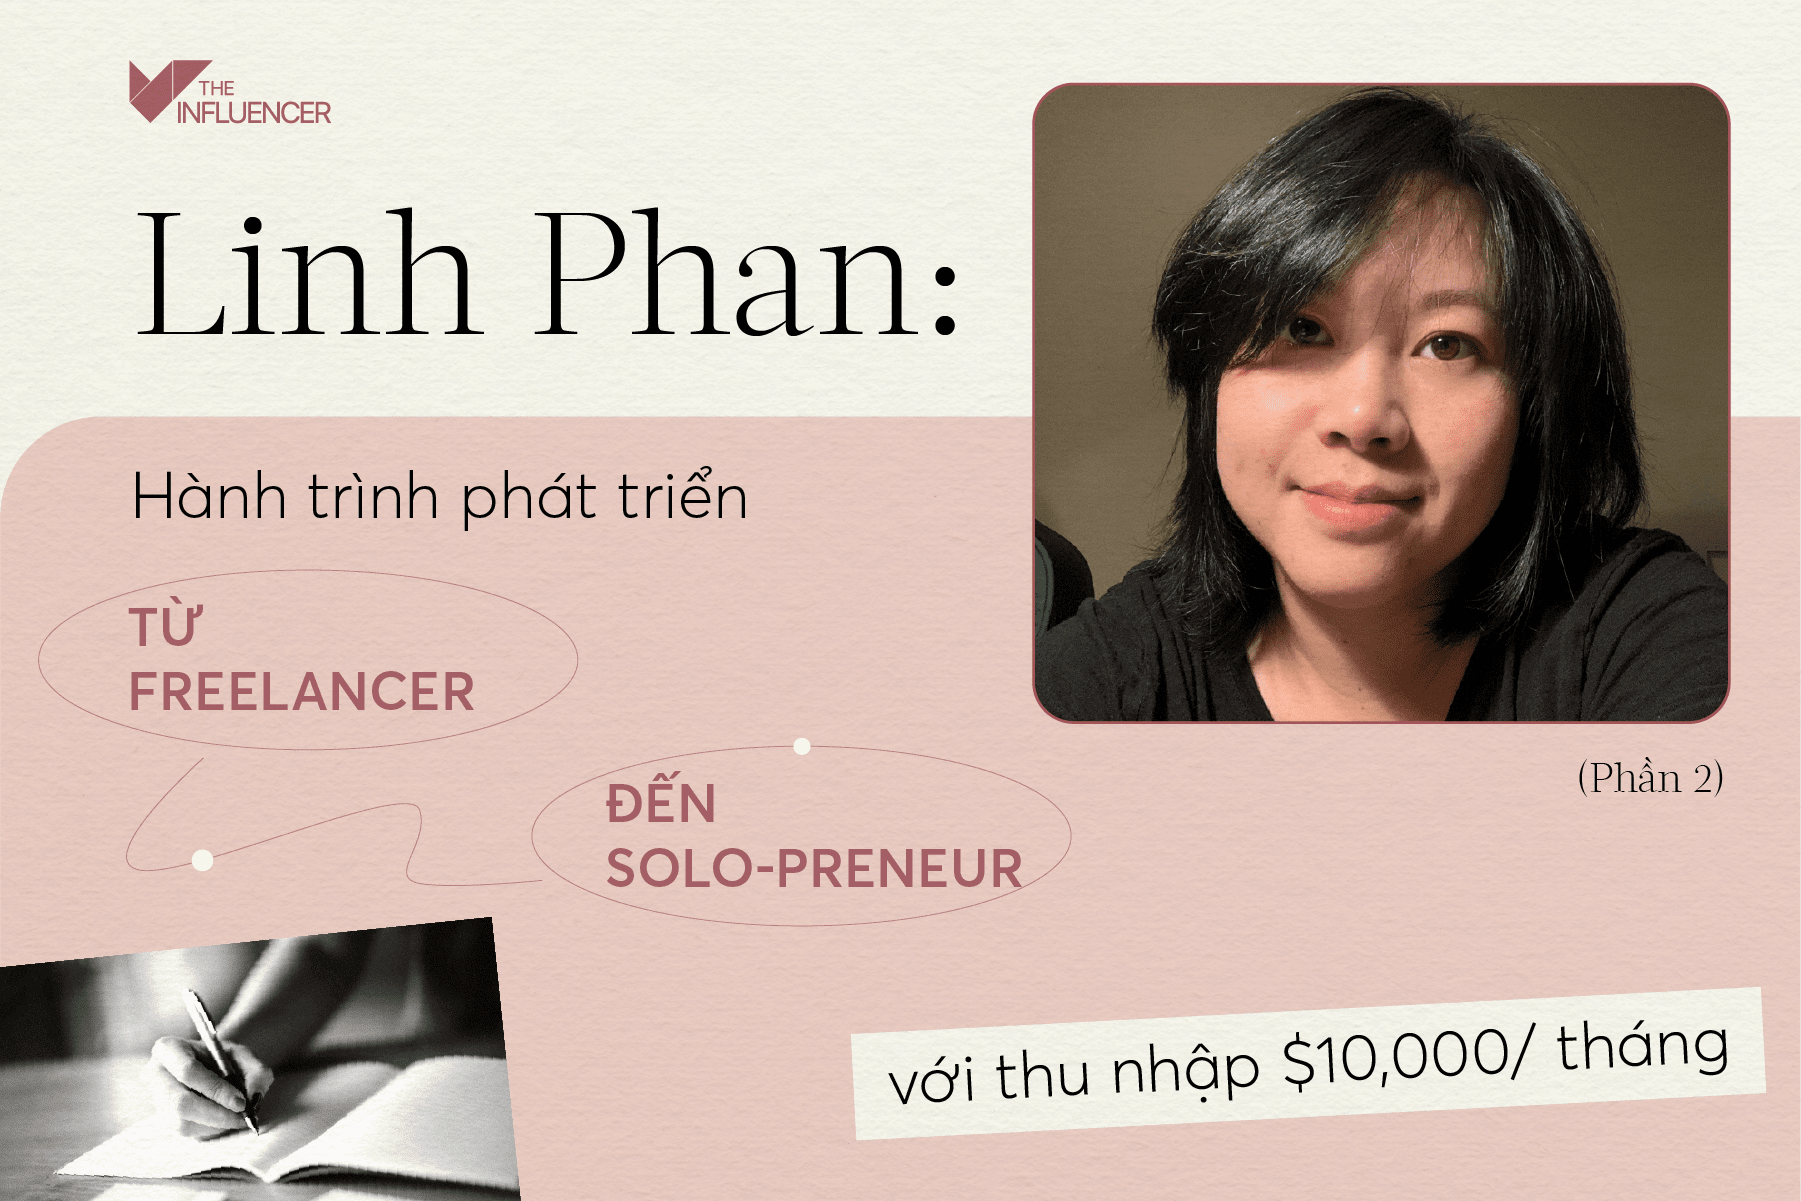 Linh Phan: Hành trình phát triển từ freelancer đến solo-preneur với thu nhập $10,000/ tháng (Phần 2)